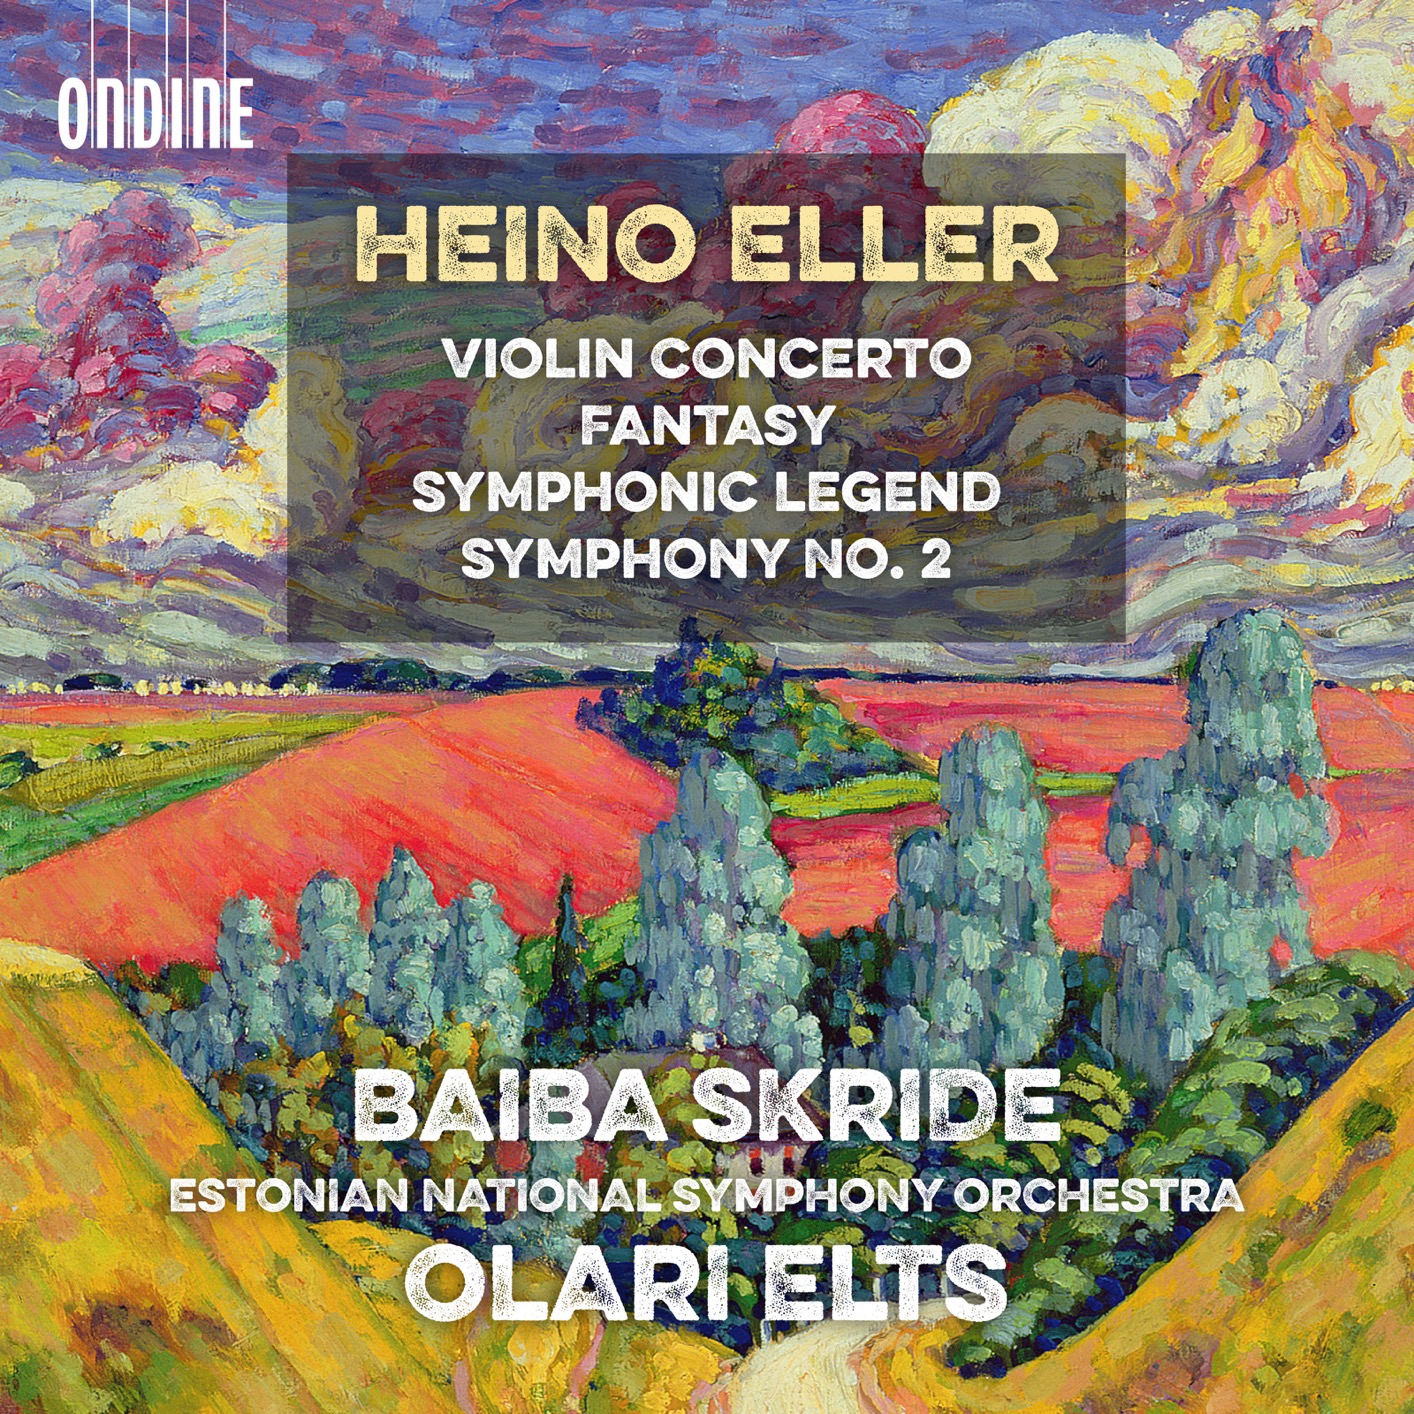 Baiba Skride - Eller: Violin Concerto, Fantasy, Symphonic Legend & Symphony No. 2 (2018) [FLAC 24bit/96kHz]